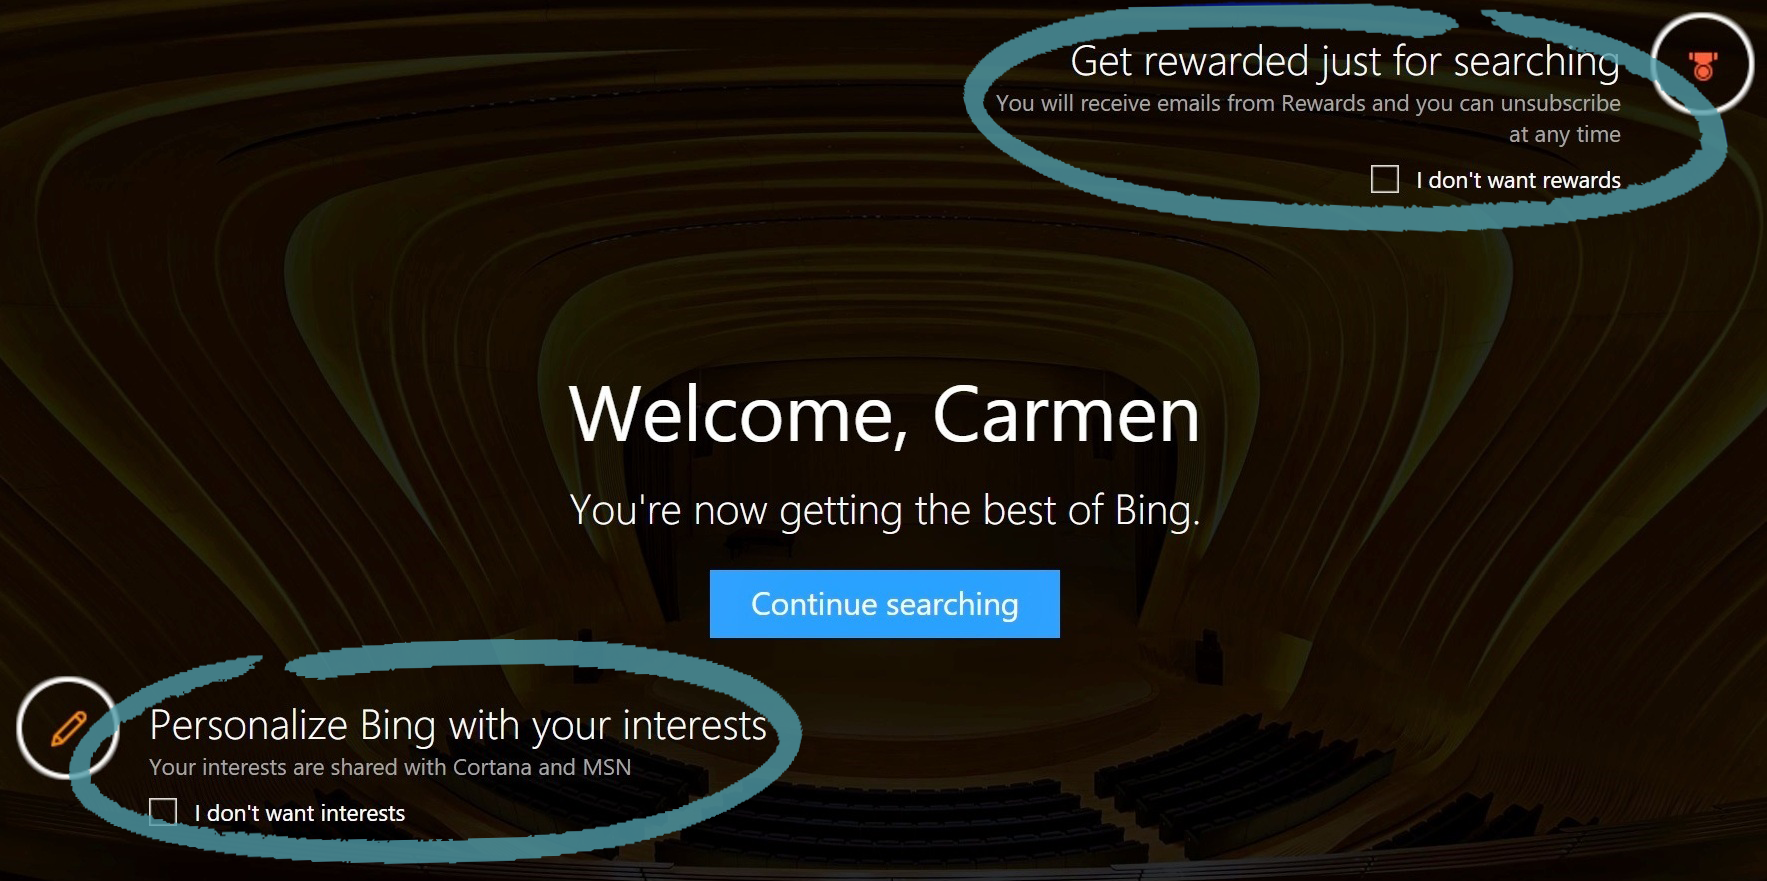 Pàgina principal del Bing per participar a premis i a interessos